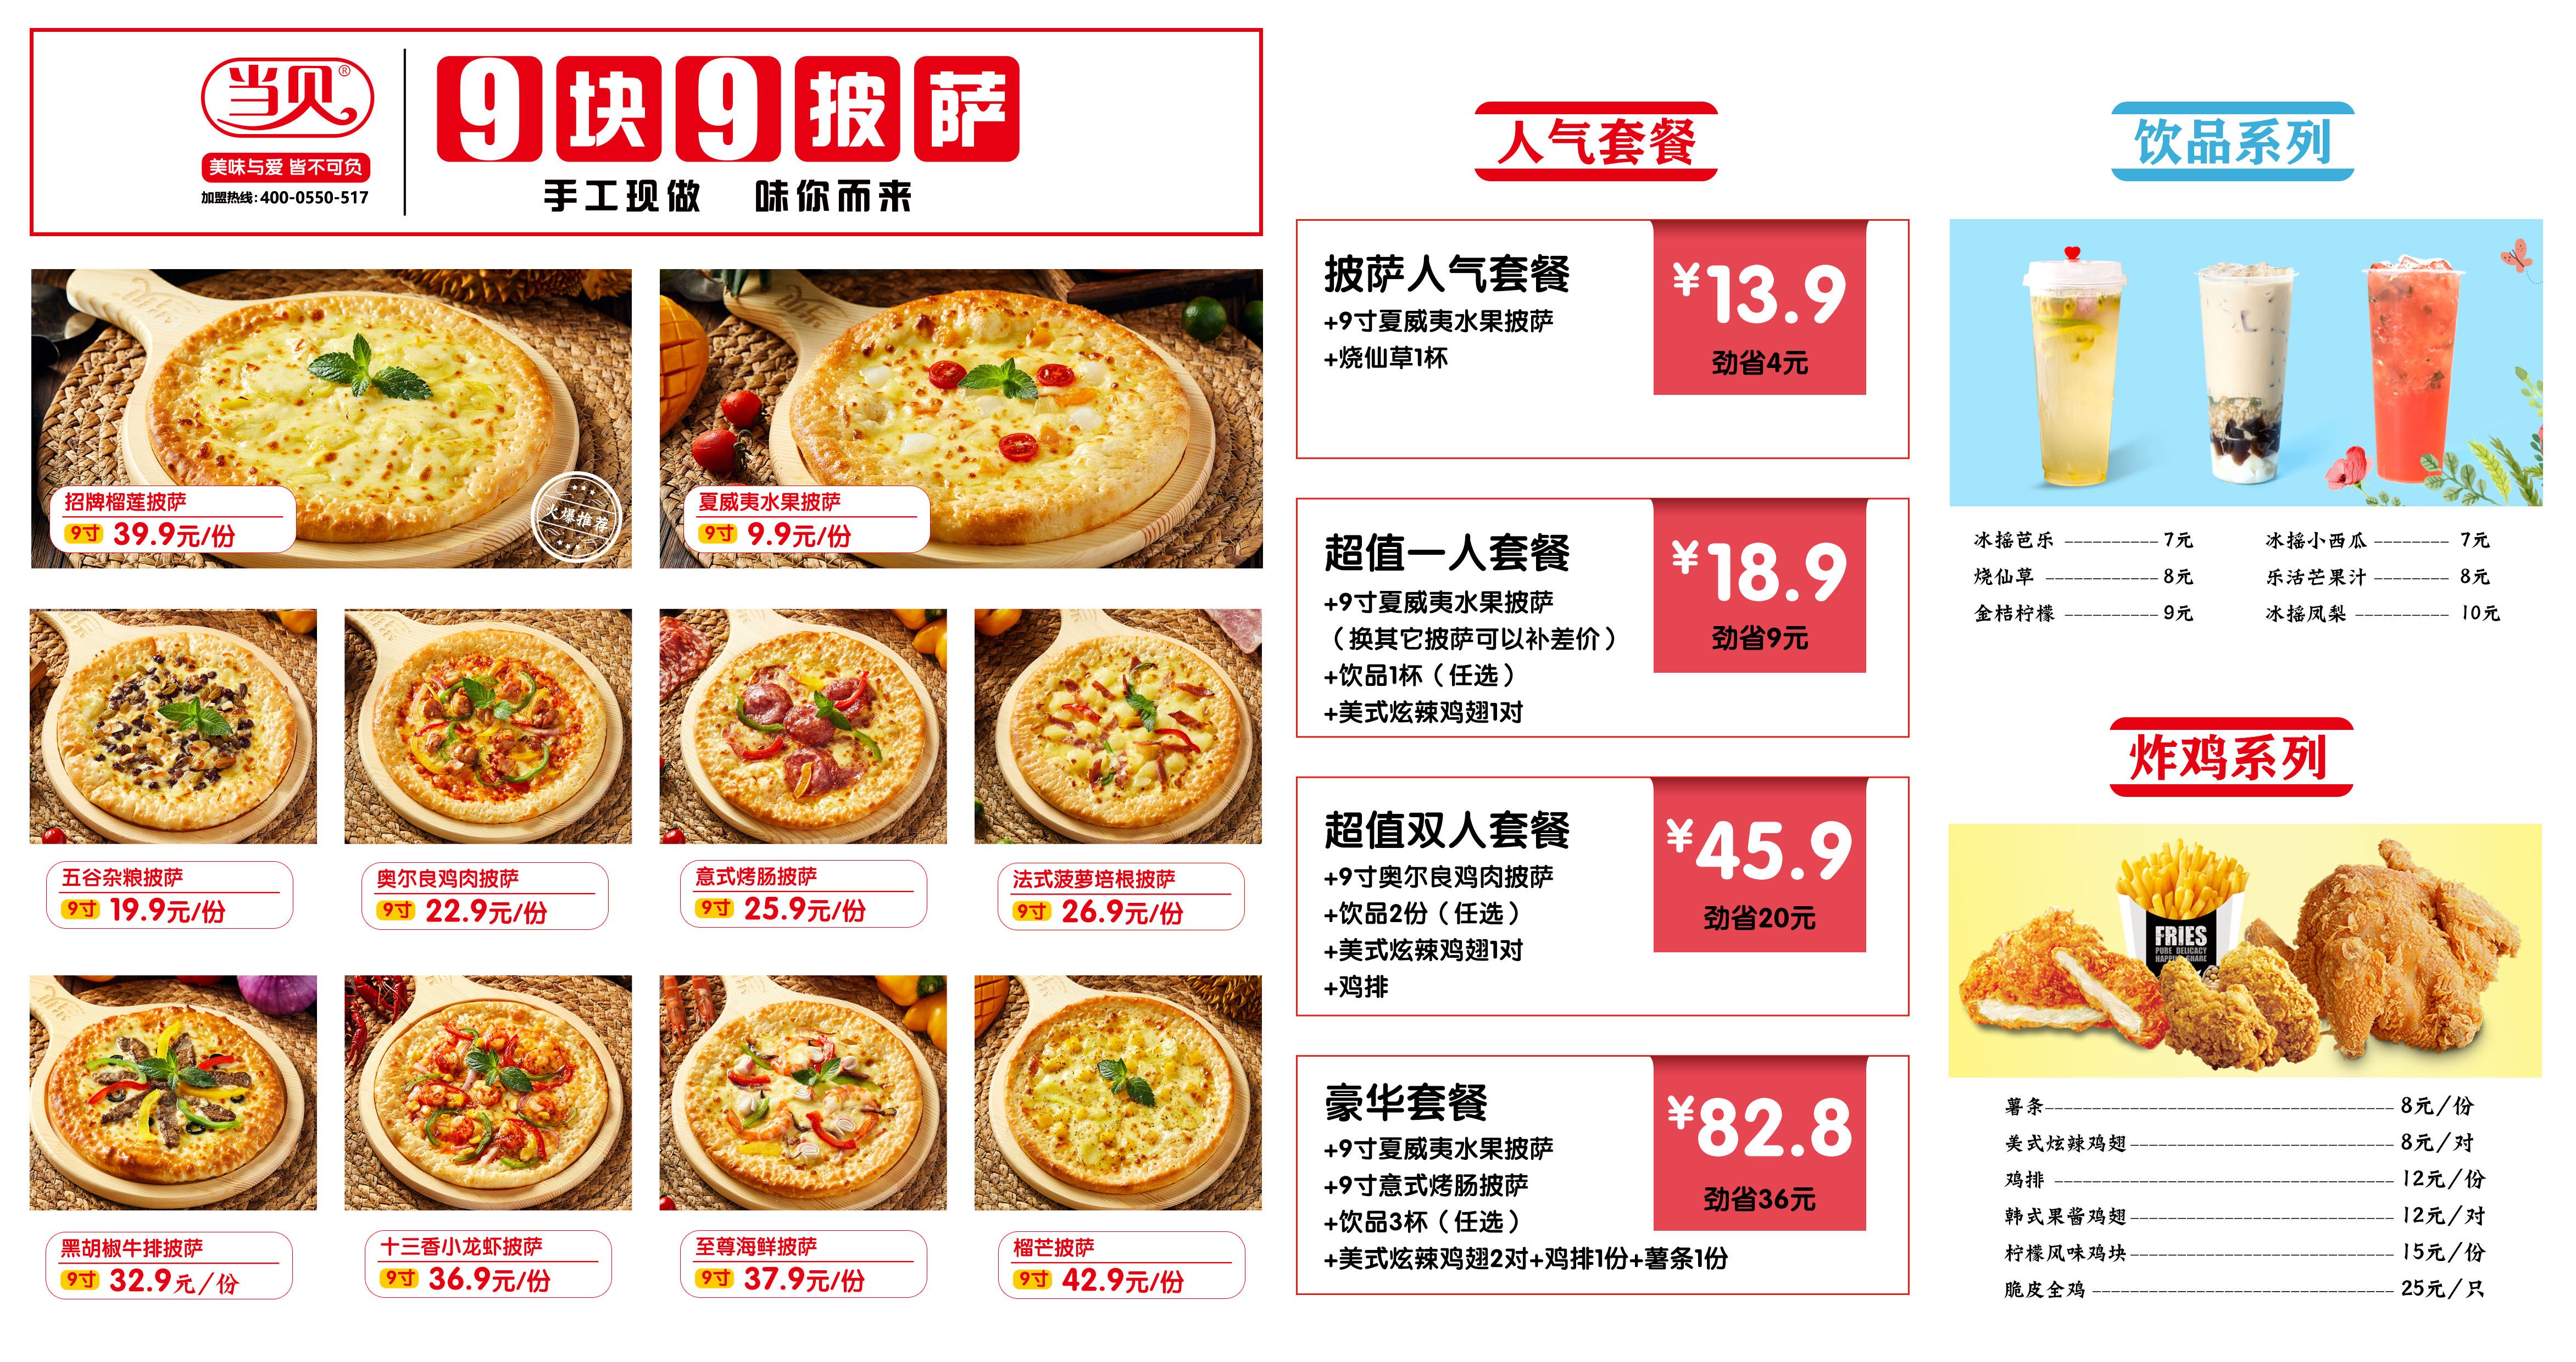 101披萨菜单图片及价格图片